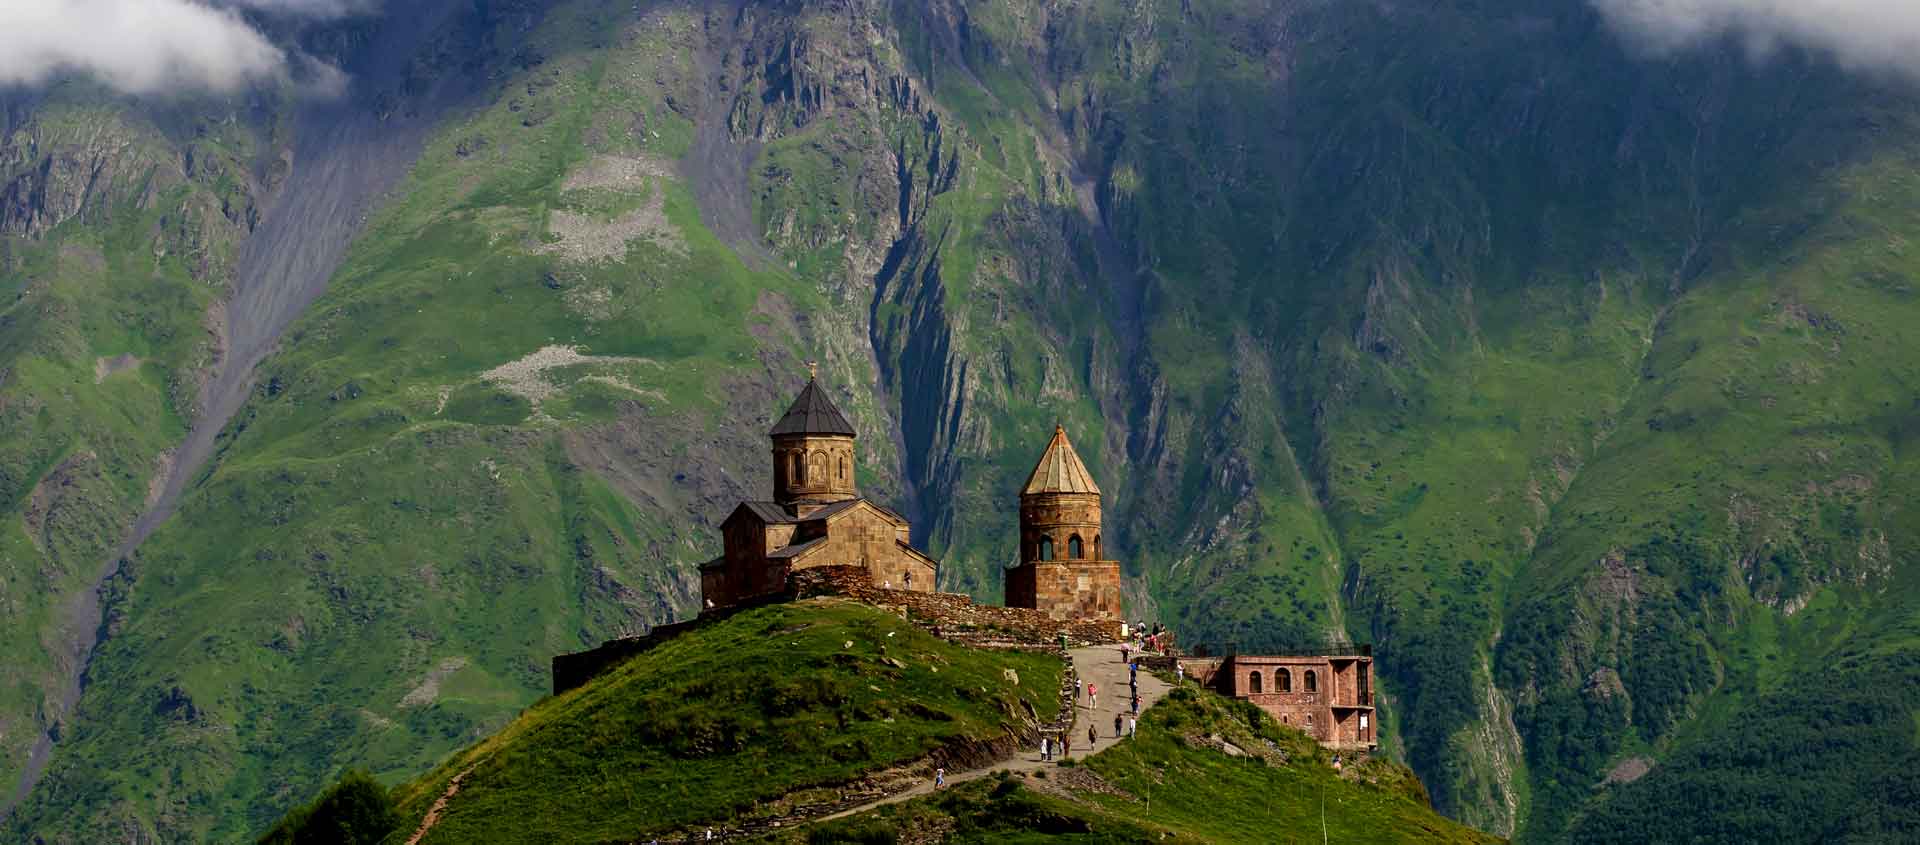 Caucasus Tour image of Gergeti Trinity Church in Georgia